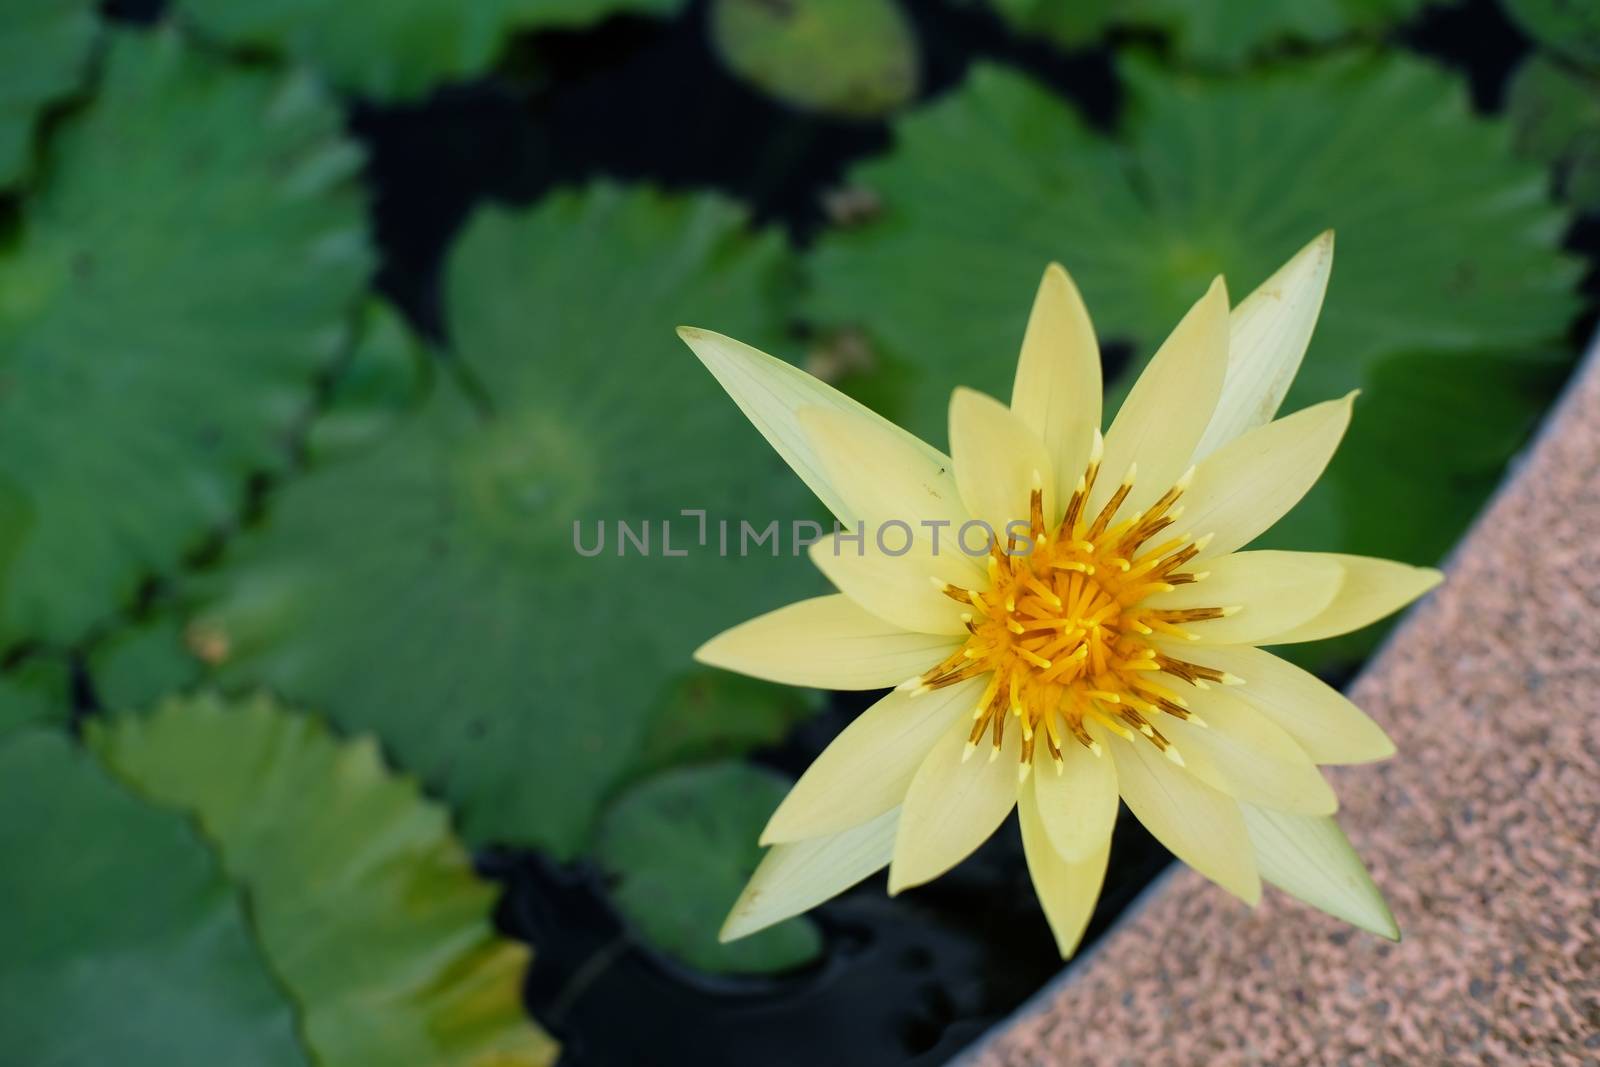 Lotus flower by peandben